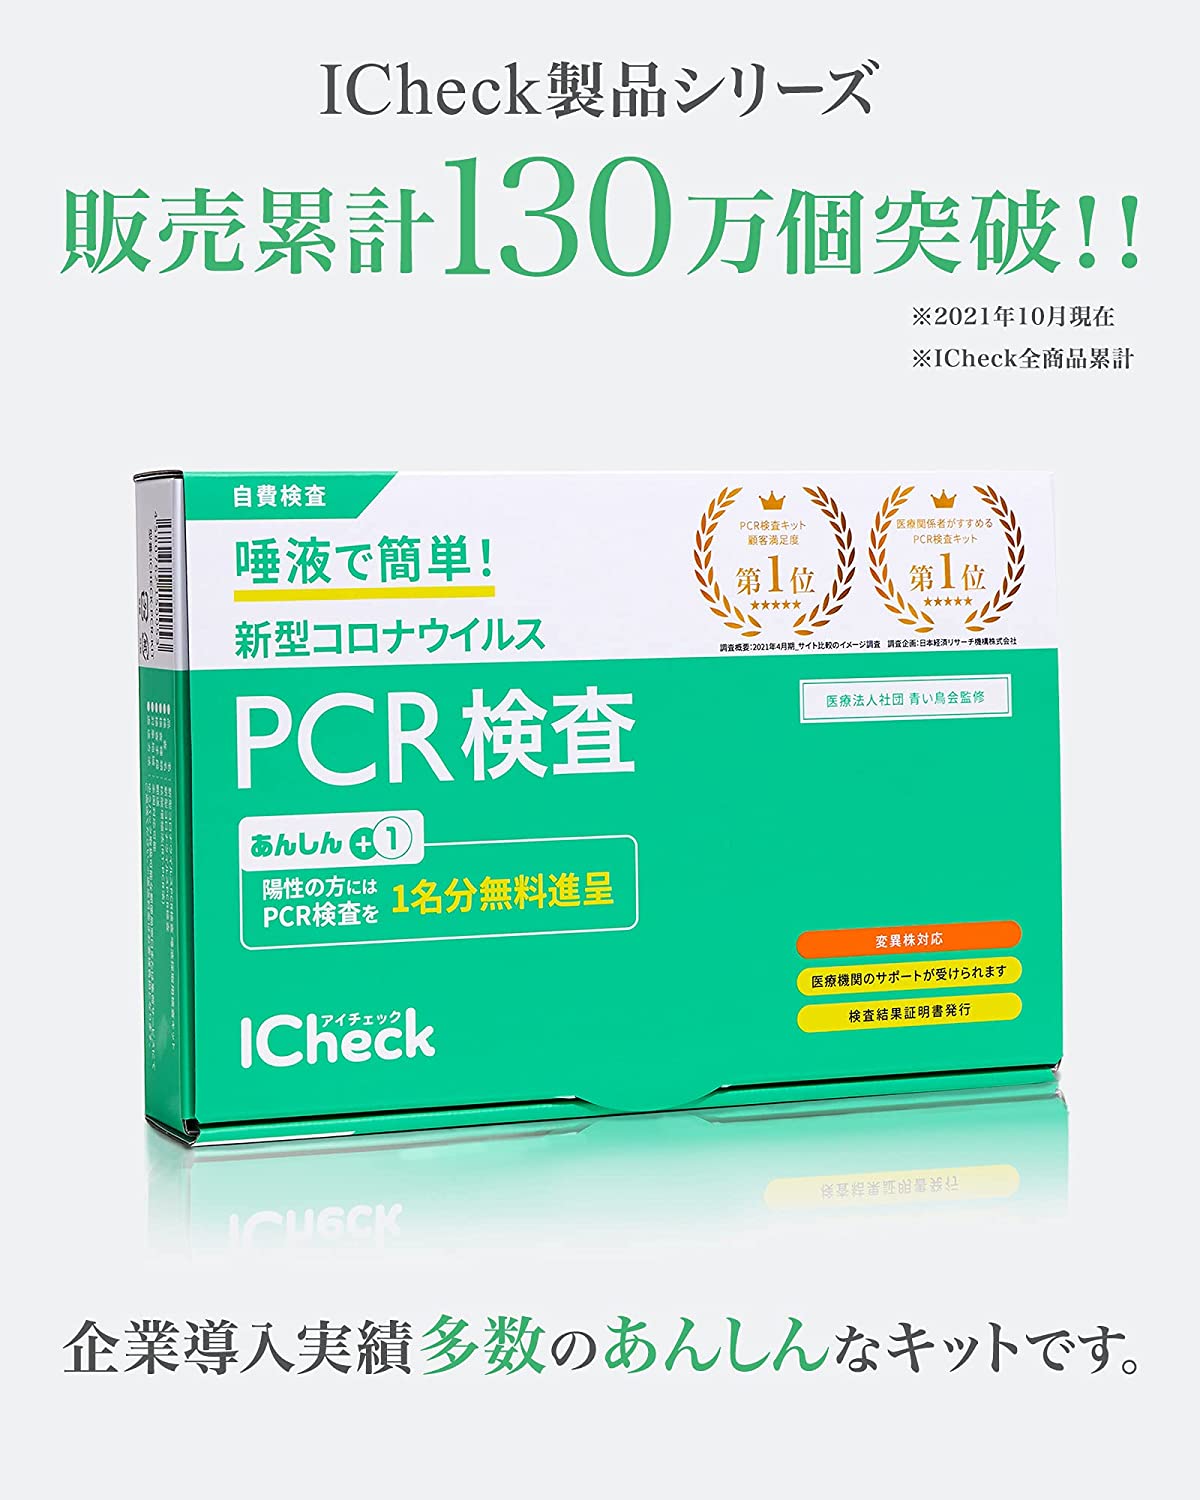 ICheck Eye check [for delta strains and mutant strains] New Corona PCR test kit